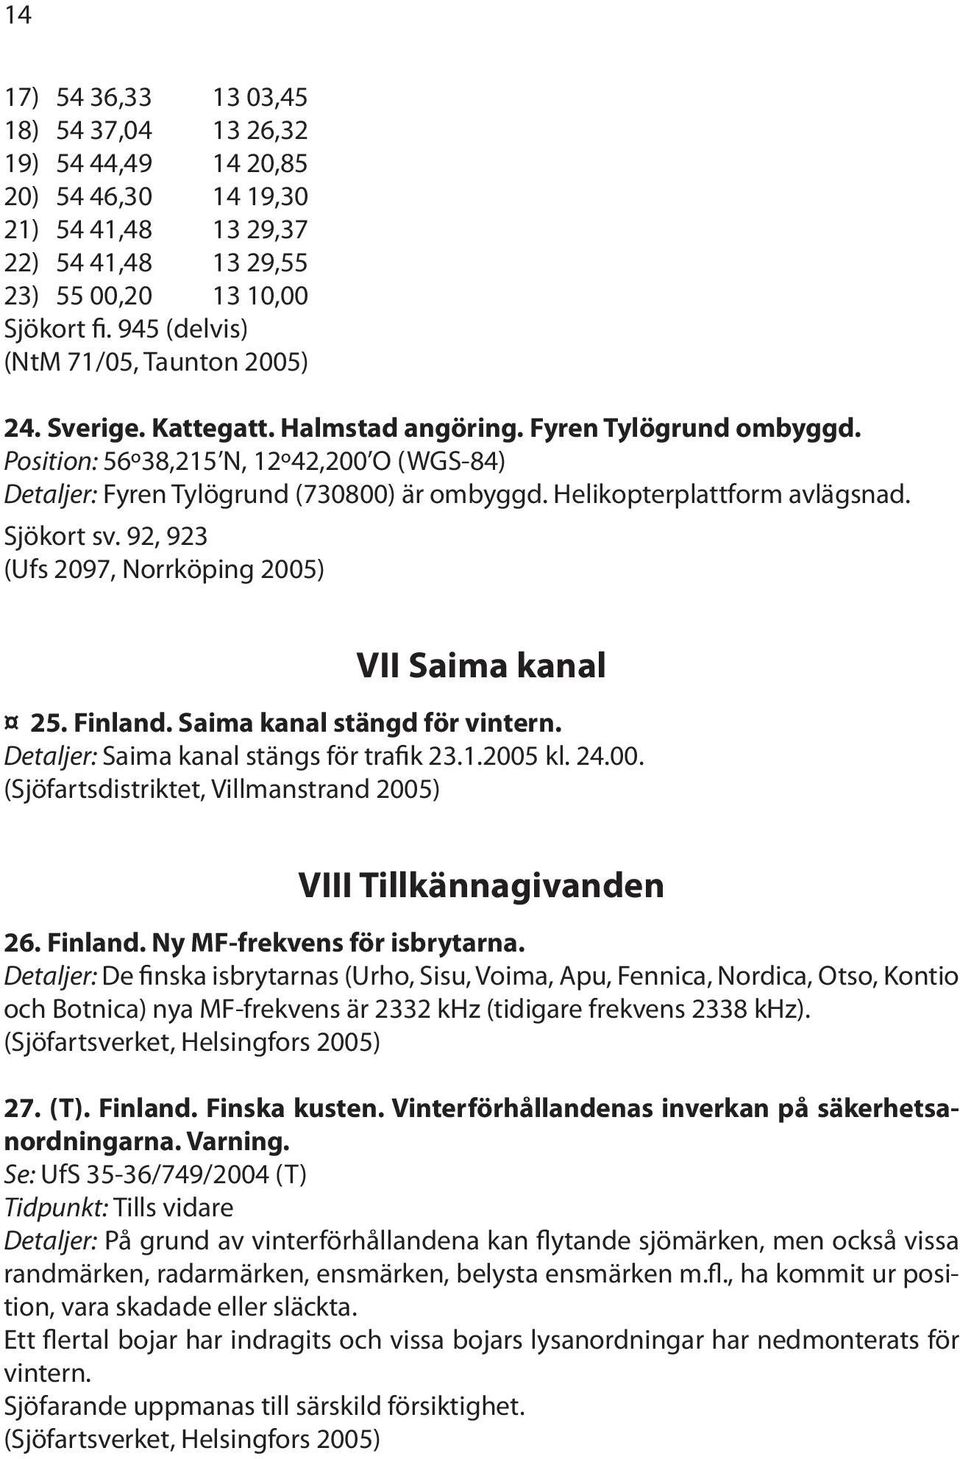 Helikopterplattform avlägsnad. Sjökort sv. 92, 923 (Ufs 2097, Norrköping 2005) VII Saima kanal 25. Finland. Saima kanal stängd för vintern. Detaljer: Saima kanal stängs för trafik 23.1.2005 kl. 24.00. (Sjöfartsdistriktet, Villmanstrand 2005) VIII Tillkännagivanden 26.